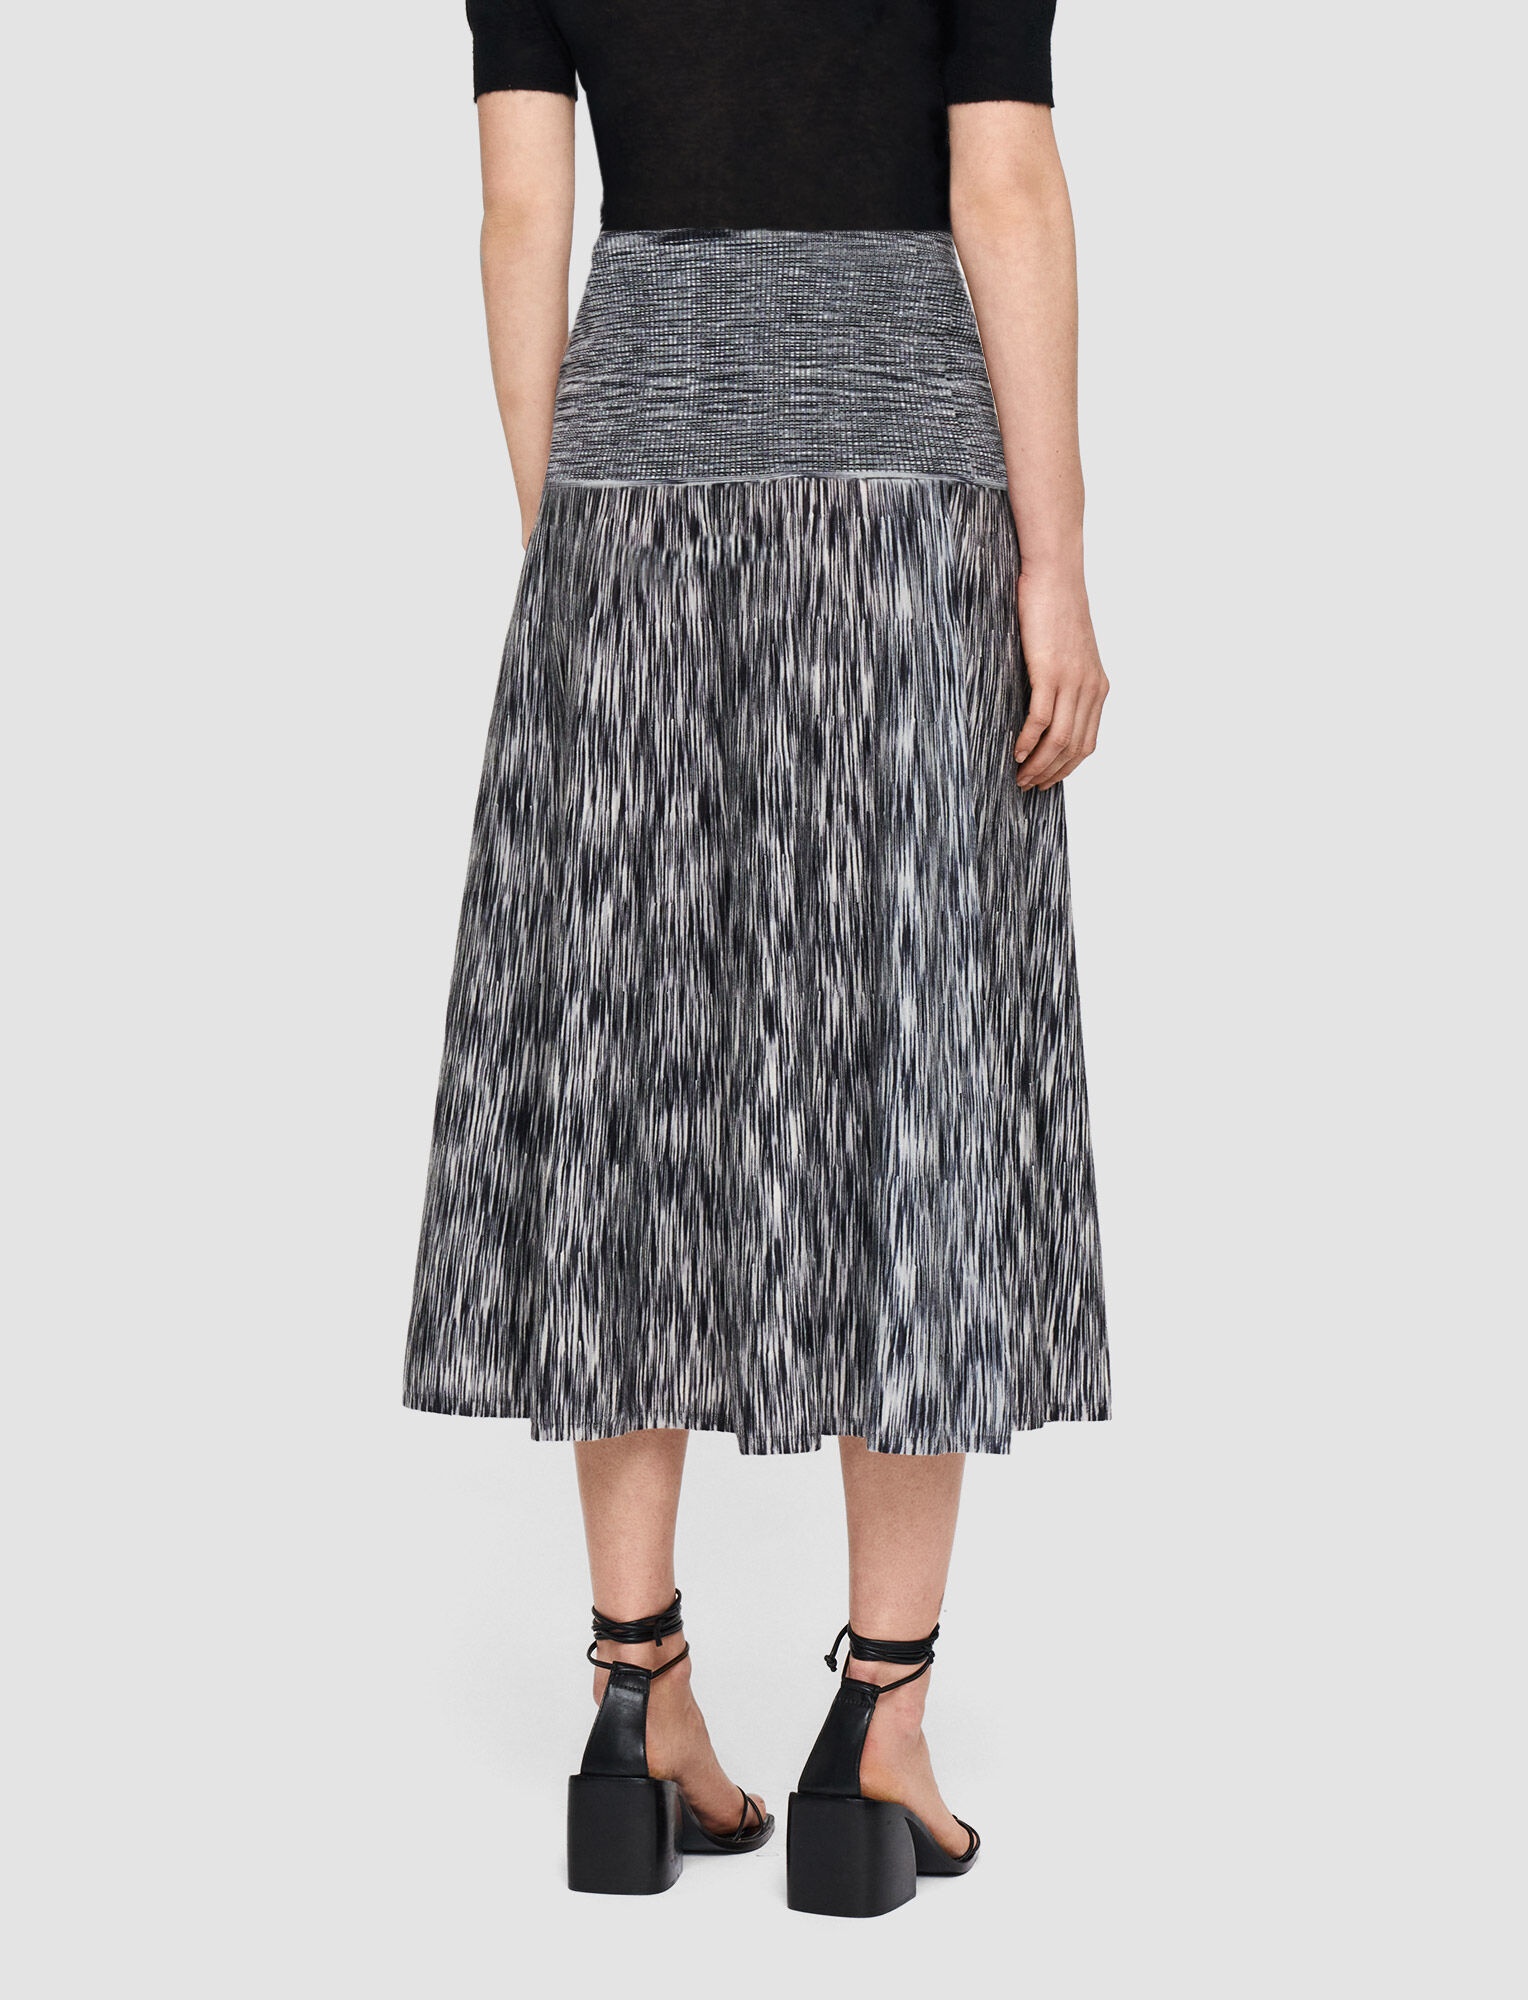 Printed Merino Skirt - 3